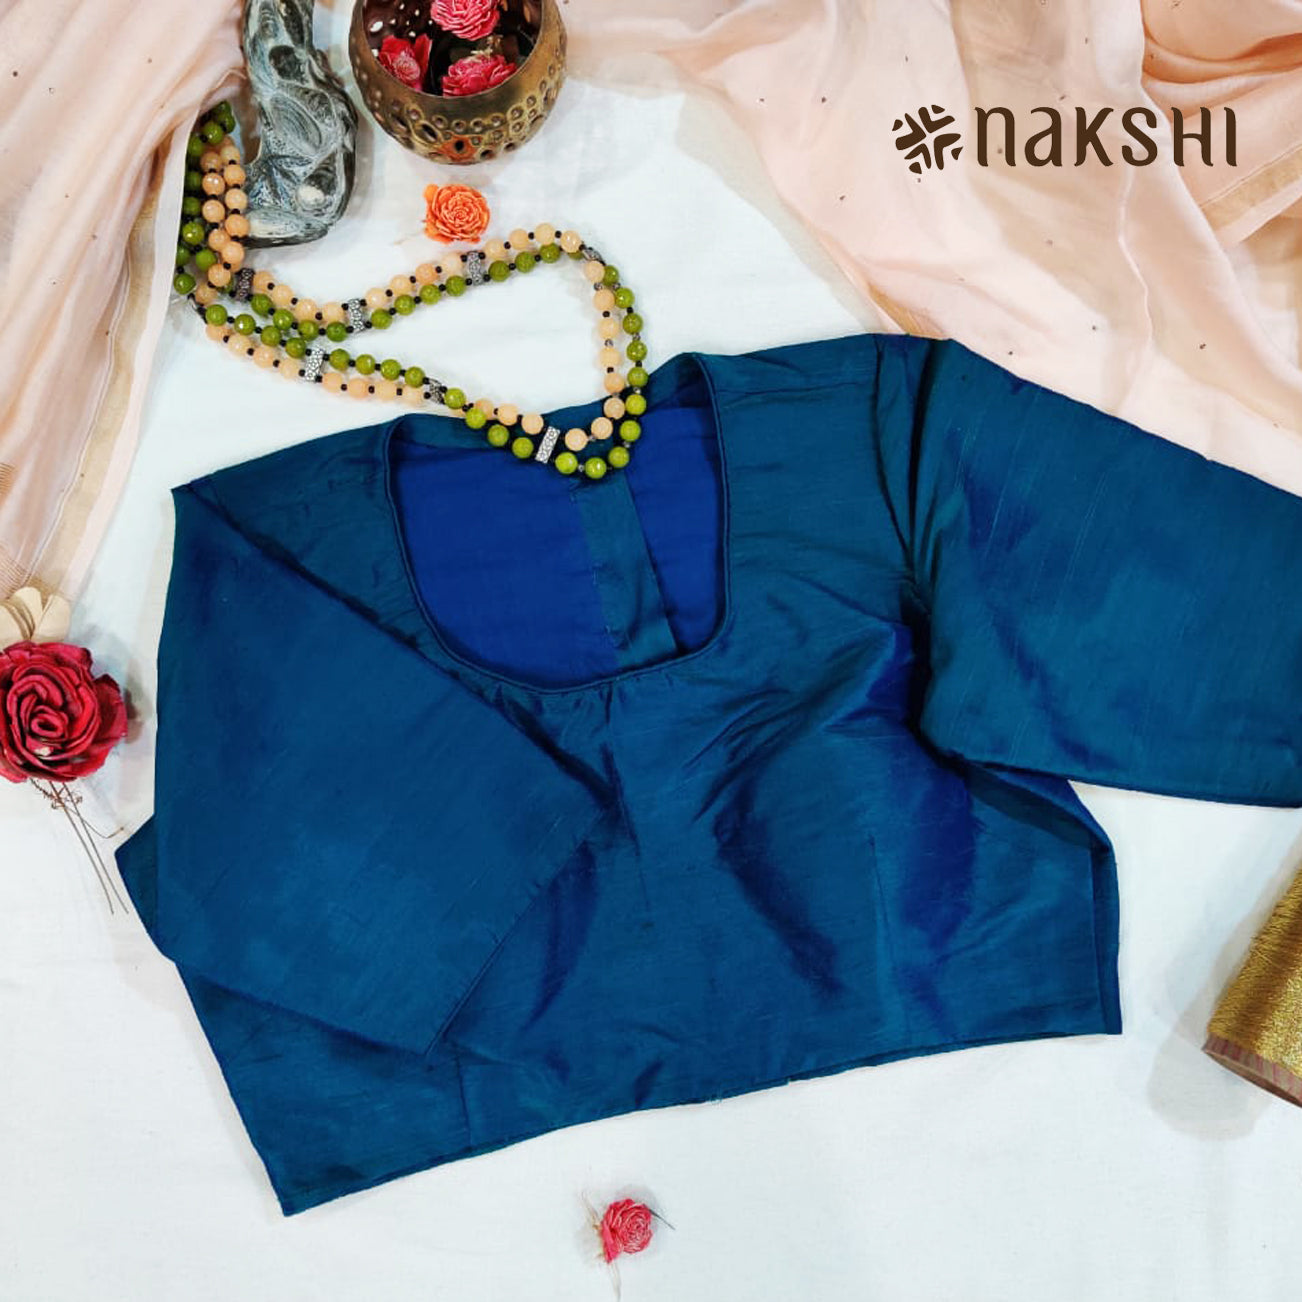 Nakshi Blue Solid Dupion Silk Blouse